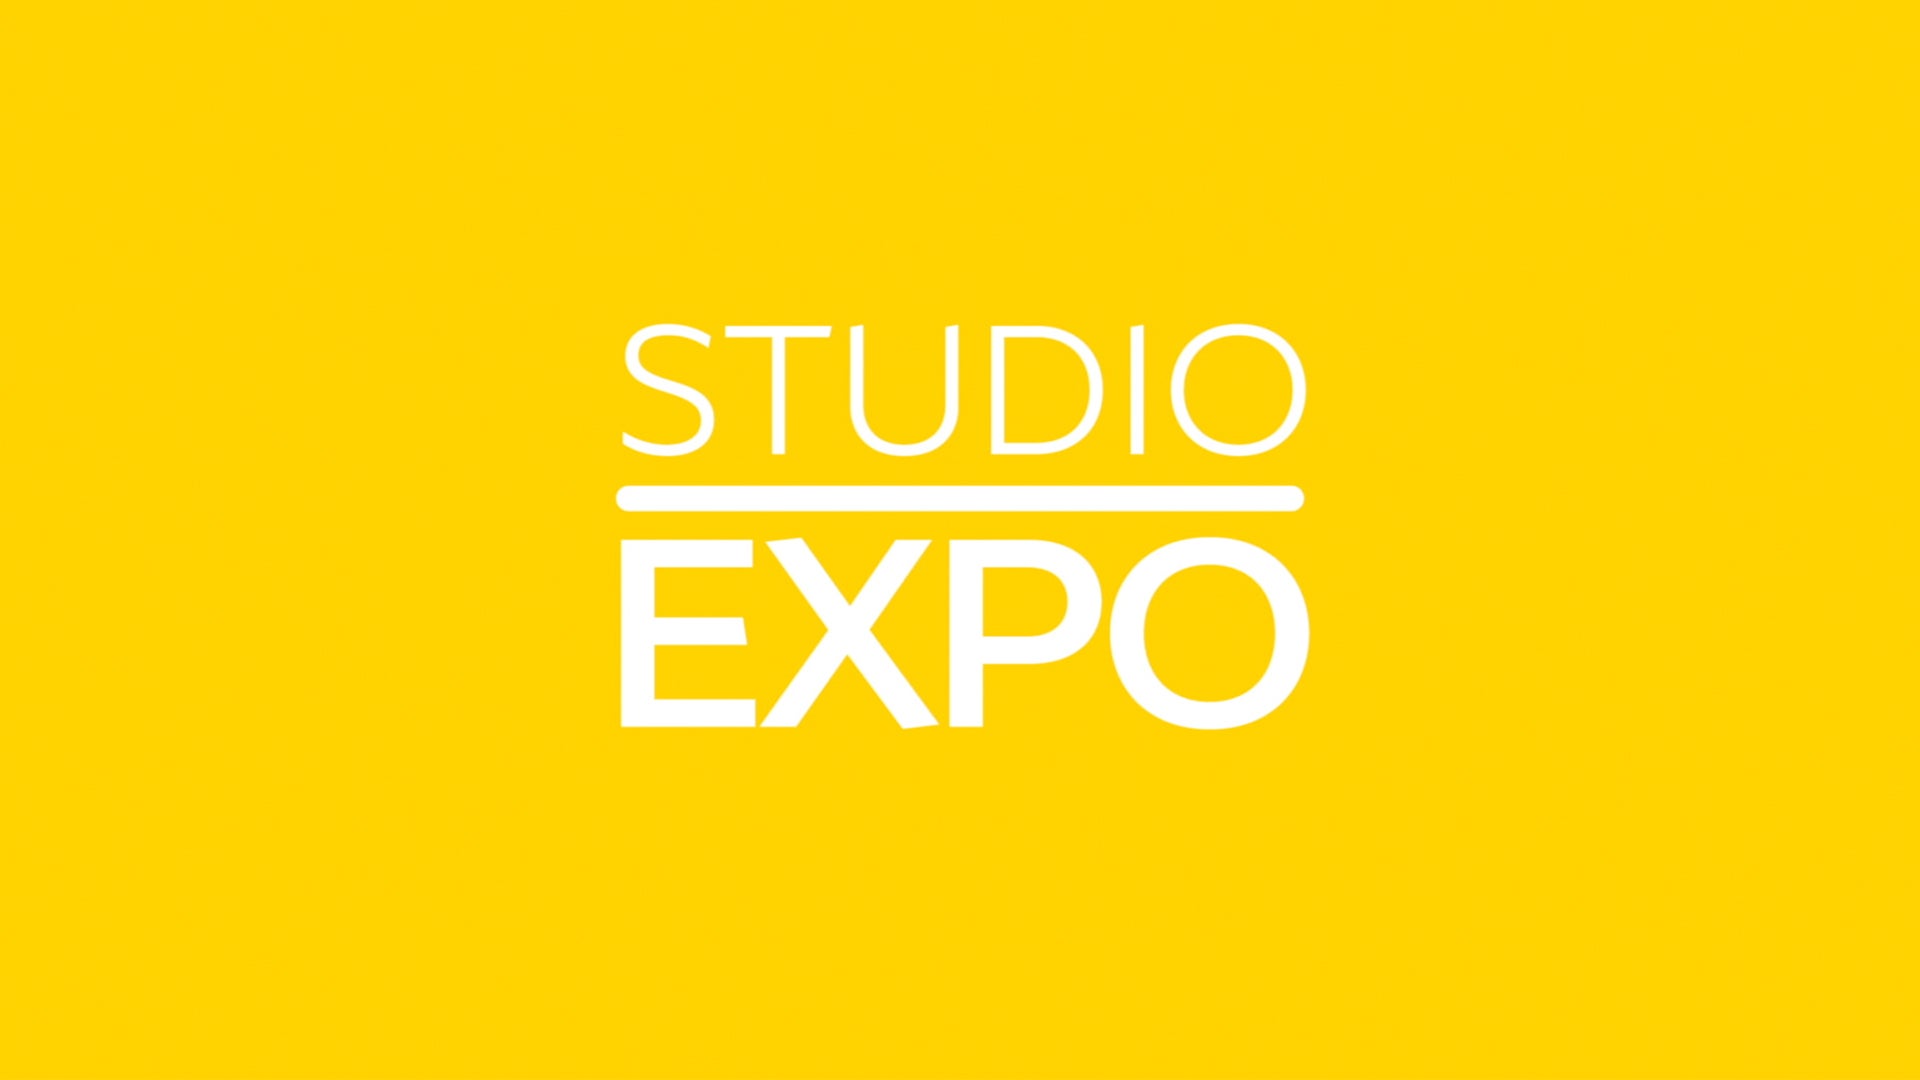 Studio Expo show